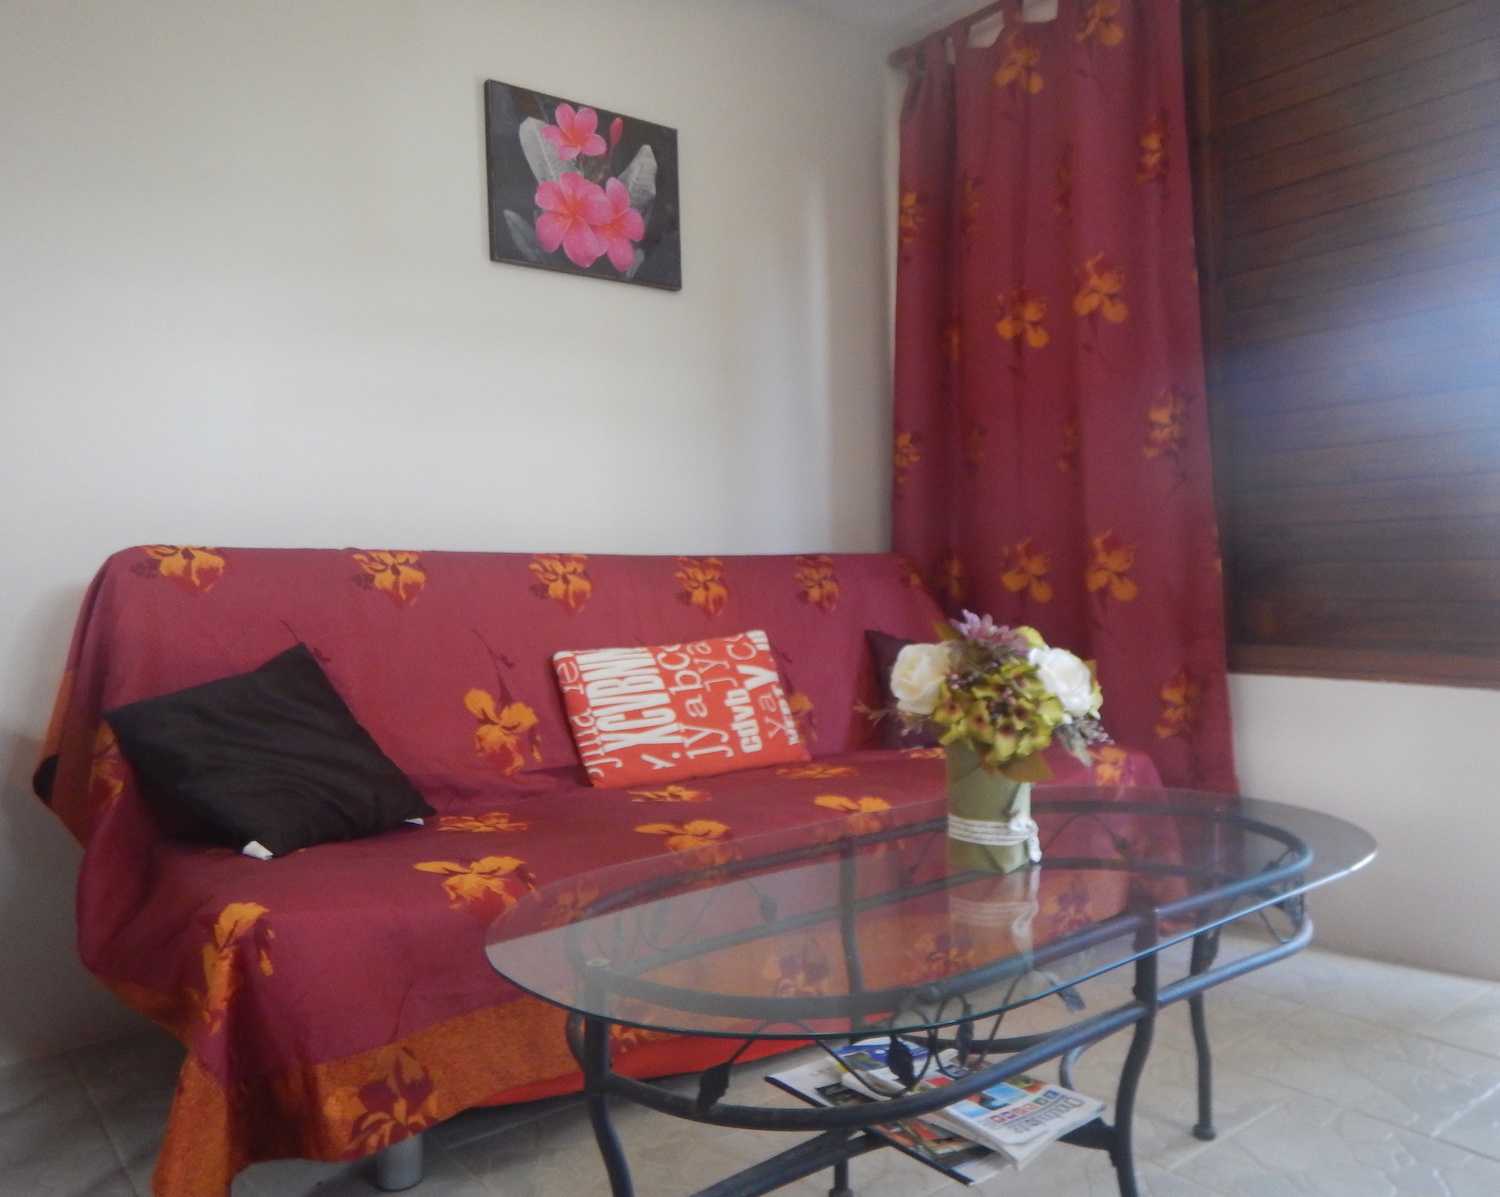 Location de vacances en Martinique appartements meublés à St-Joseph Les joyaux de Balata